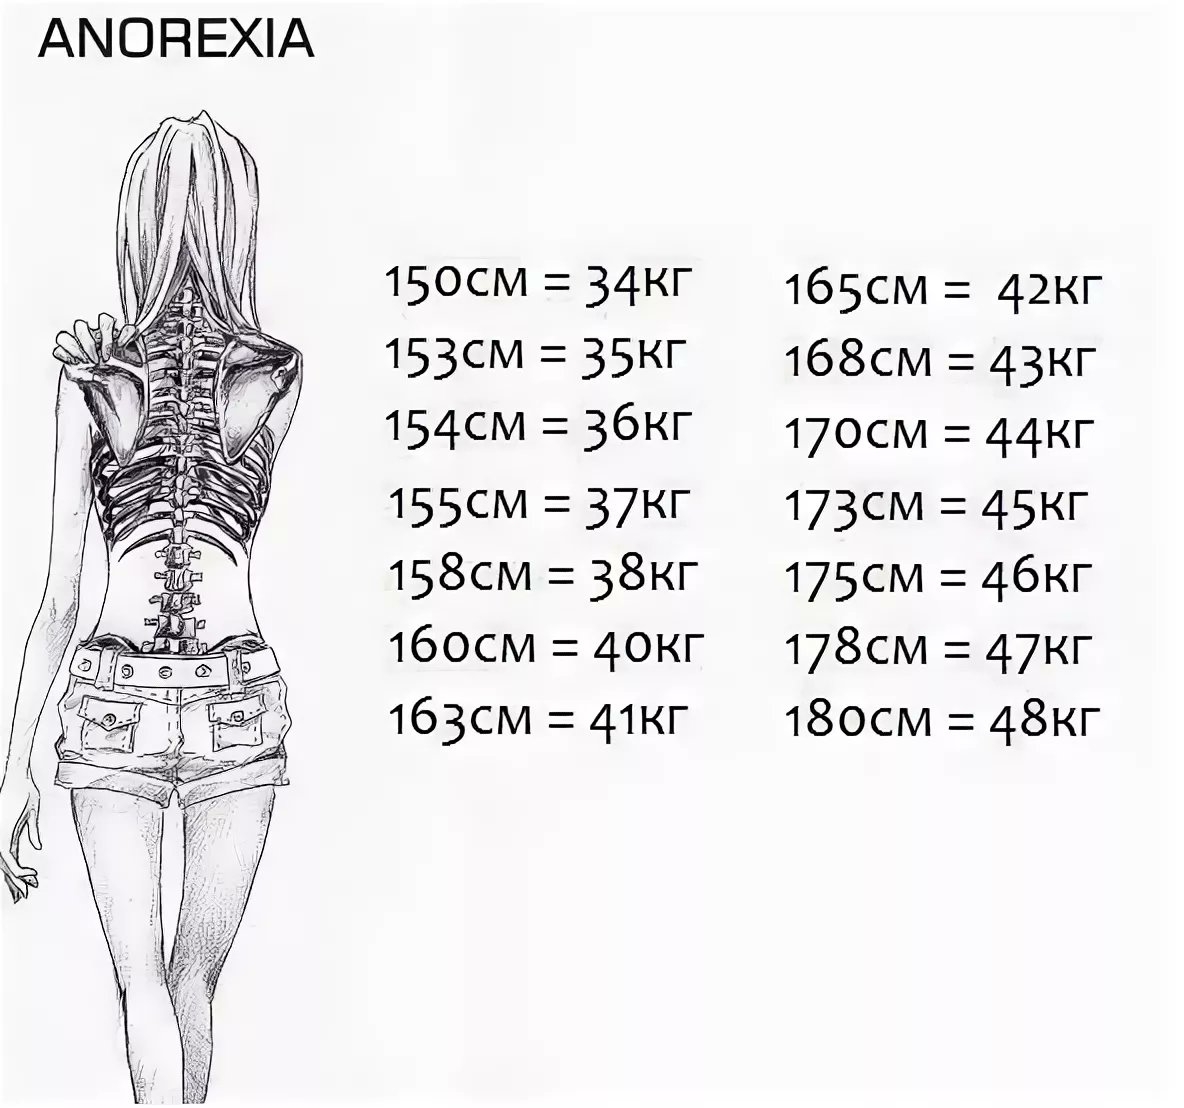 167 идеальный рост. Анорексия вес и рост. С какого веса начинается анорексия при росте 160. Таблица анорексии рост вес.